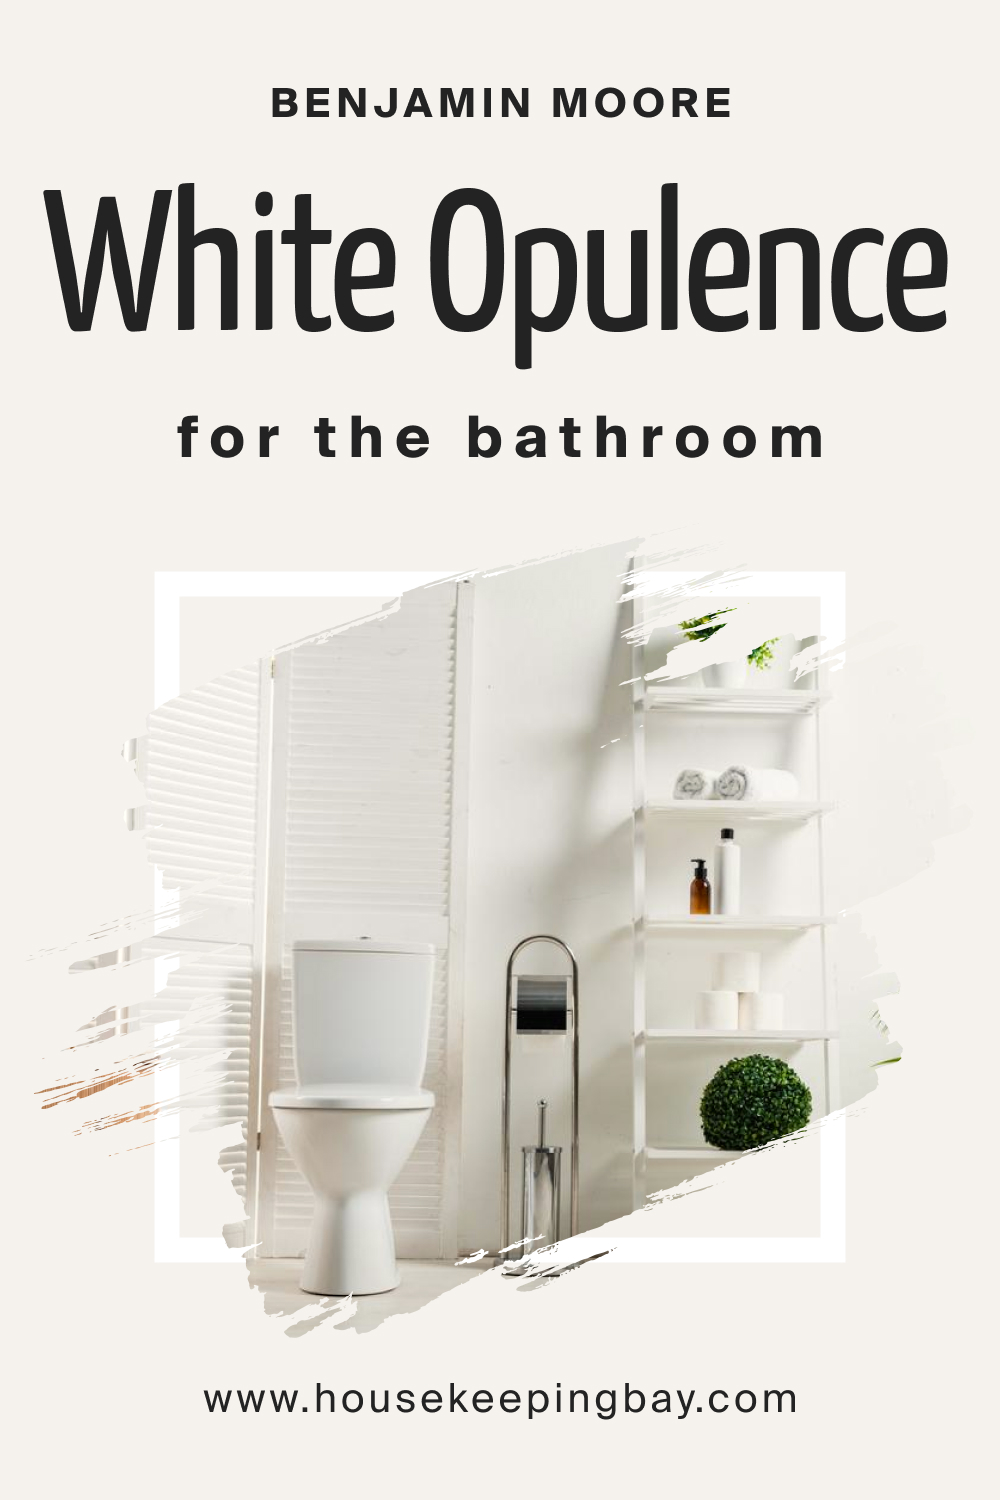 Benjamin Moore. White Opulence OC 69 for the Bathroom